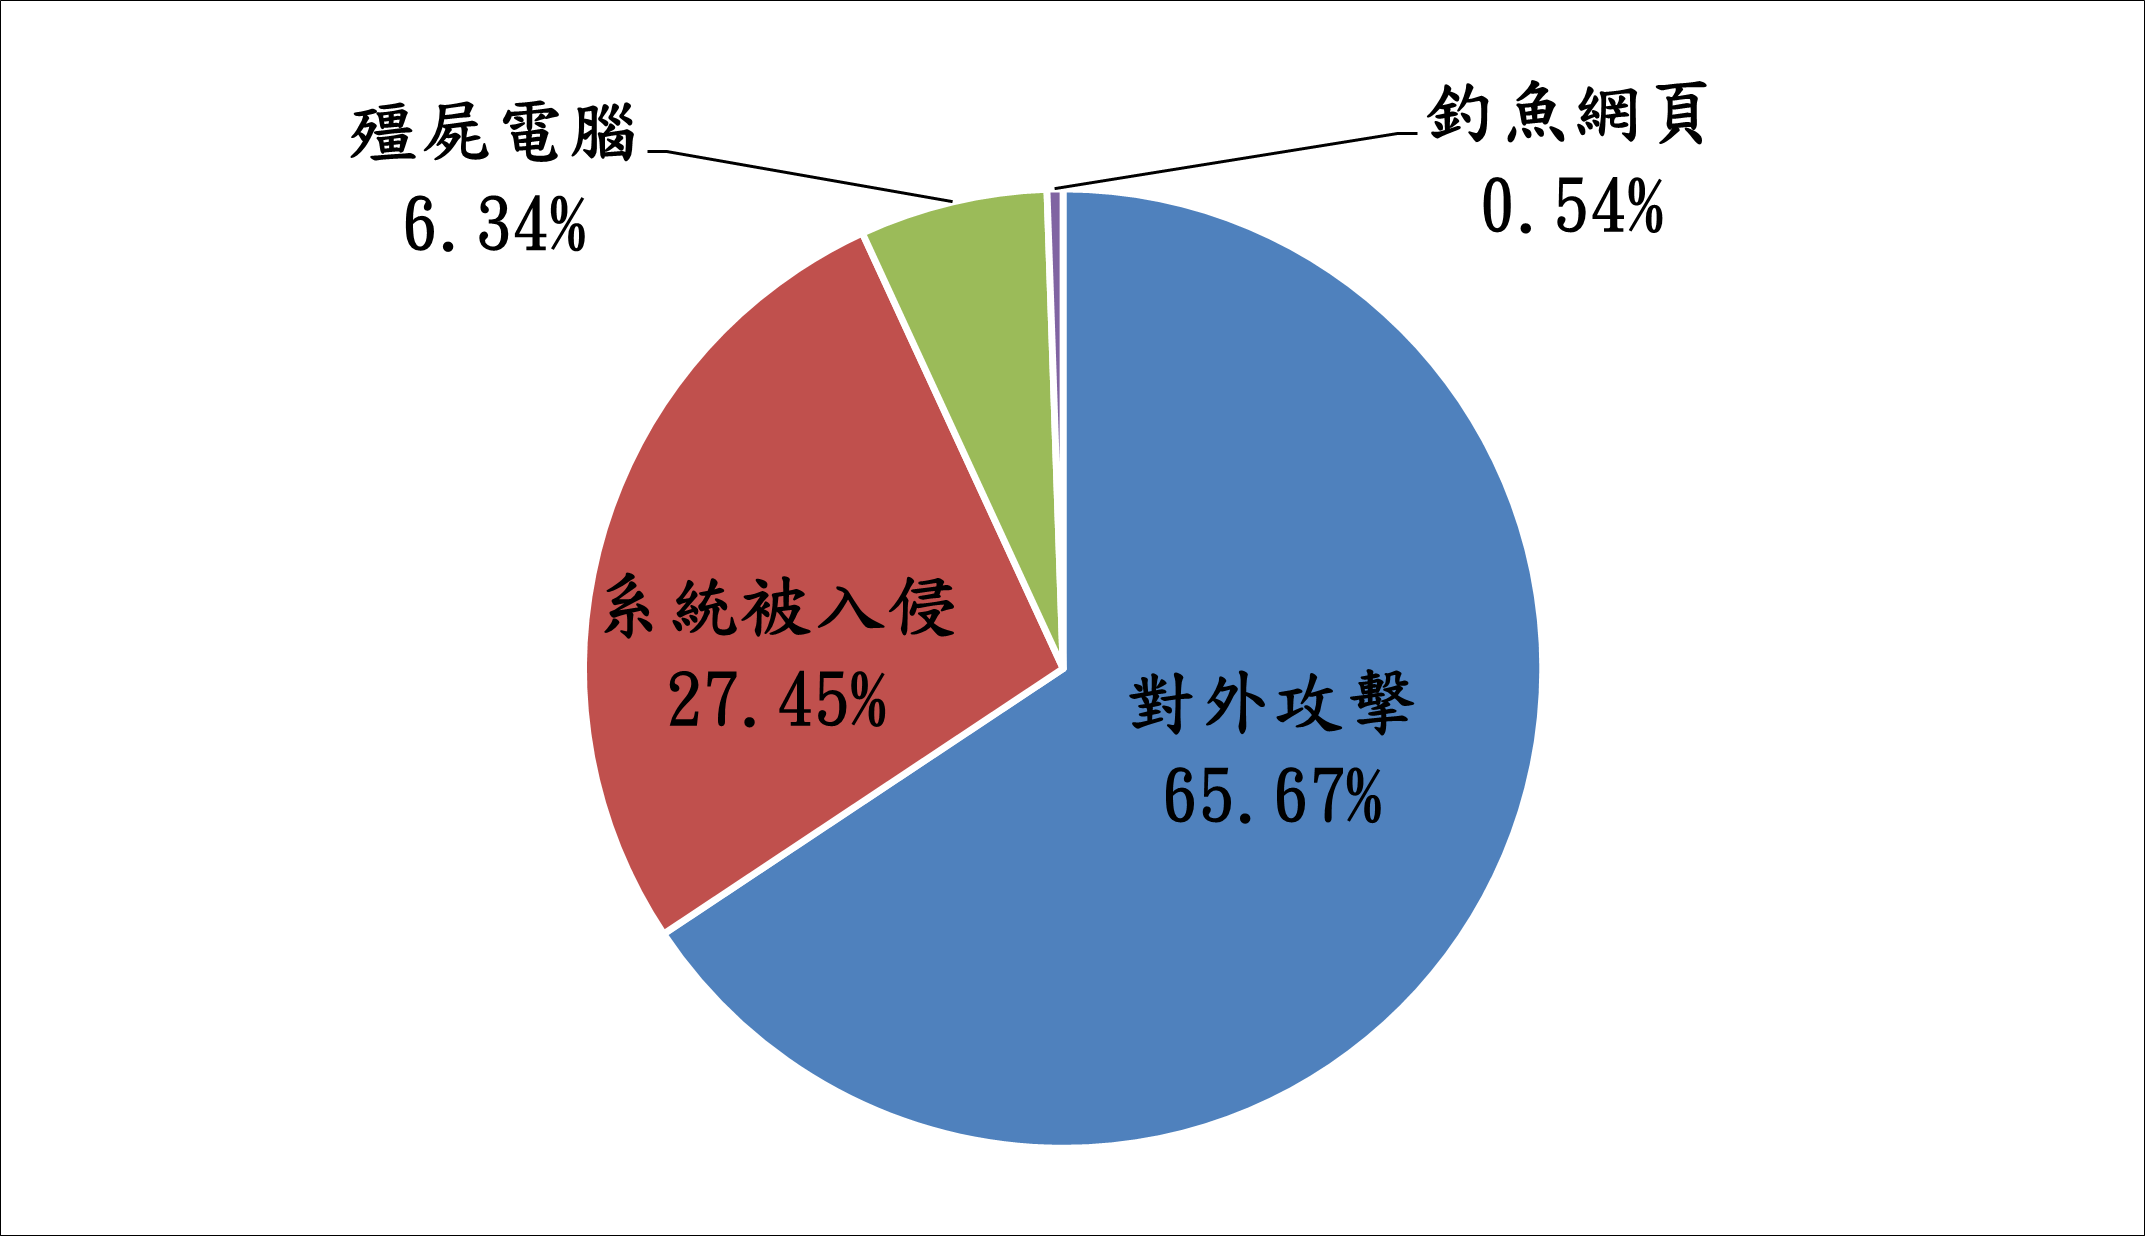 殭屍電腦6.34% 系統被入侵27.45% 對外攻擊65.67% 釣魚網頁0.54%